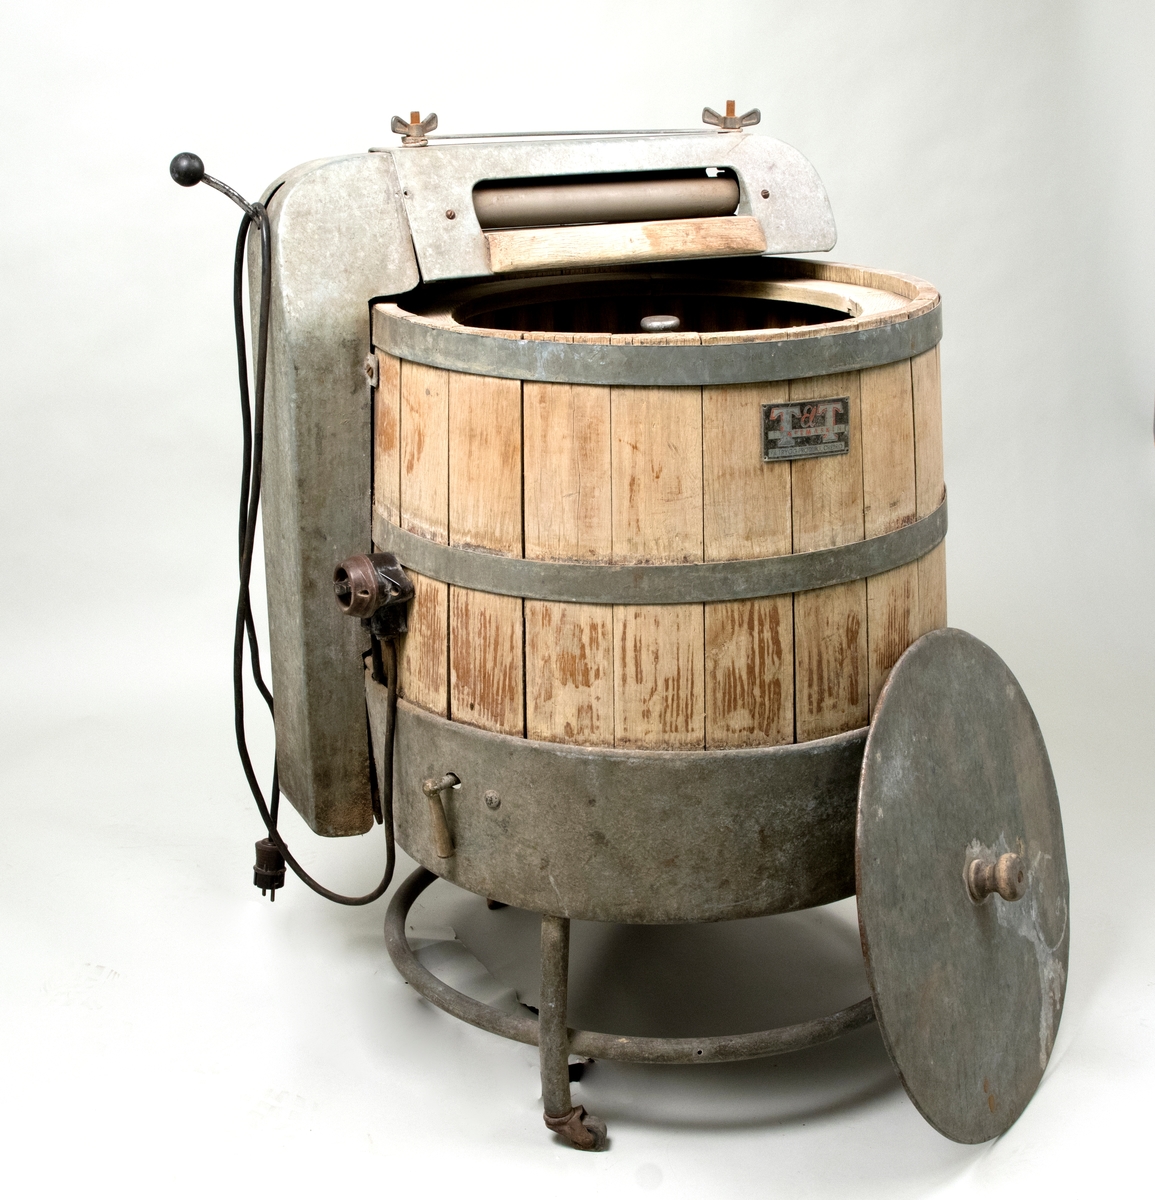 Tvätt- och vridmaskin av trä och metall. Tvättmaskinen utgörs av en träbalja, invändigt försedd med en trebladig vevanorning av metall, placerad på botten, för omrörning av tvätt och vatten. I baljans botten finns ett avtappningshål. Tvättmaskinen står på tre ben med hjul, varav ett saknas. Baljan har ett plåtlock med träknopp.

Ovanpå maskinen är monterat en vridmaskin (valsanordning), för utpressning av vattnet ur tvätten. Vevanordningen och vridmaskinen är elektrifierade, motorn sitter under baljan. El-sladd och strömbrytare finns på sidan av baljan. Vattnet fylldes på och tappades av för hand.